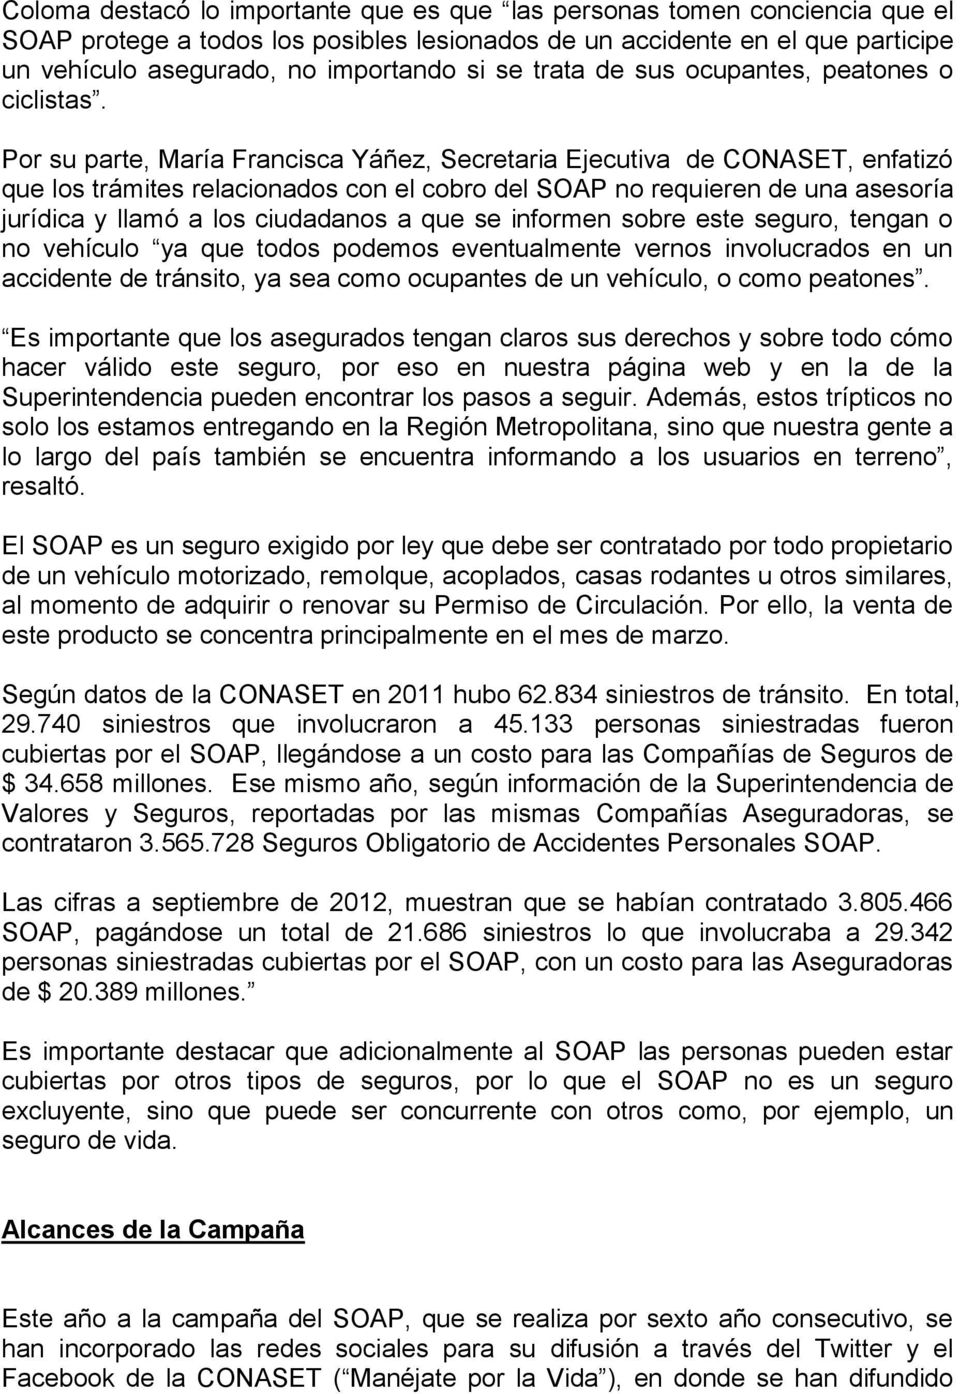 Por su parte, María Francisca Yáñez, Secretaria Ejecutiva de CONASET, enfatizó que los trámites relacionados con el cobro del SOAP no requieren de una asesoría jurídica y llamó a los ciudadanos a que